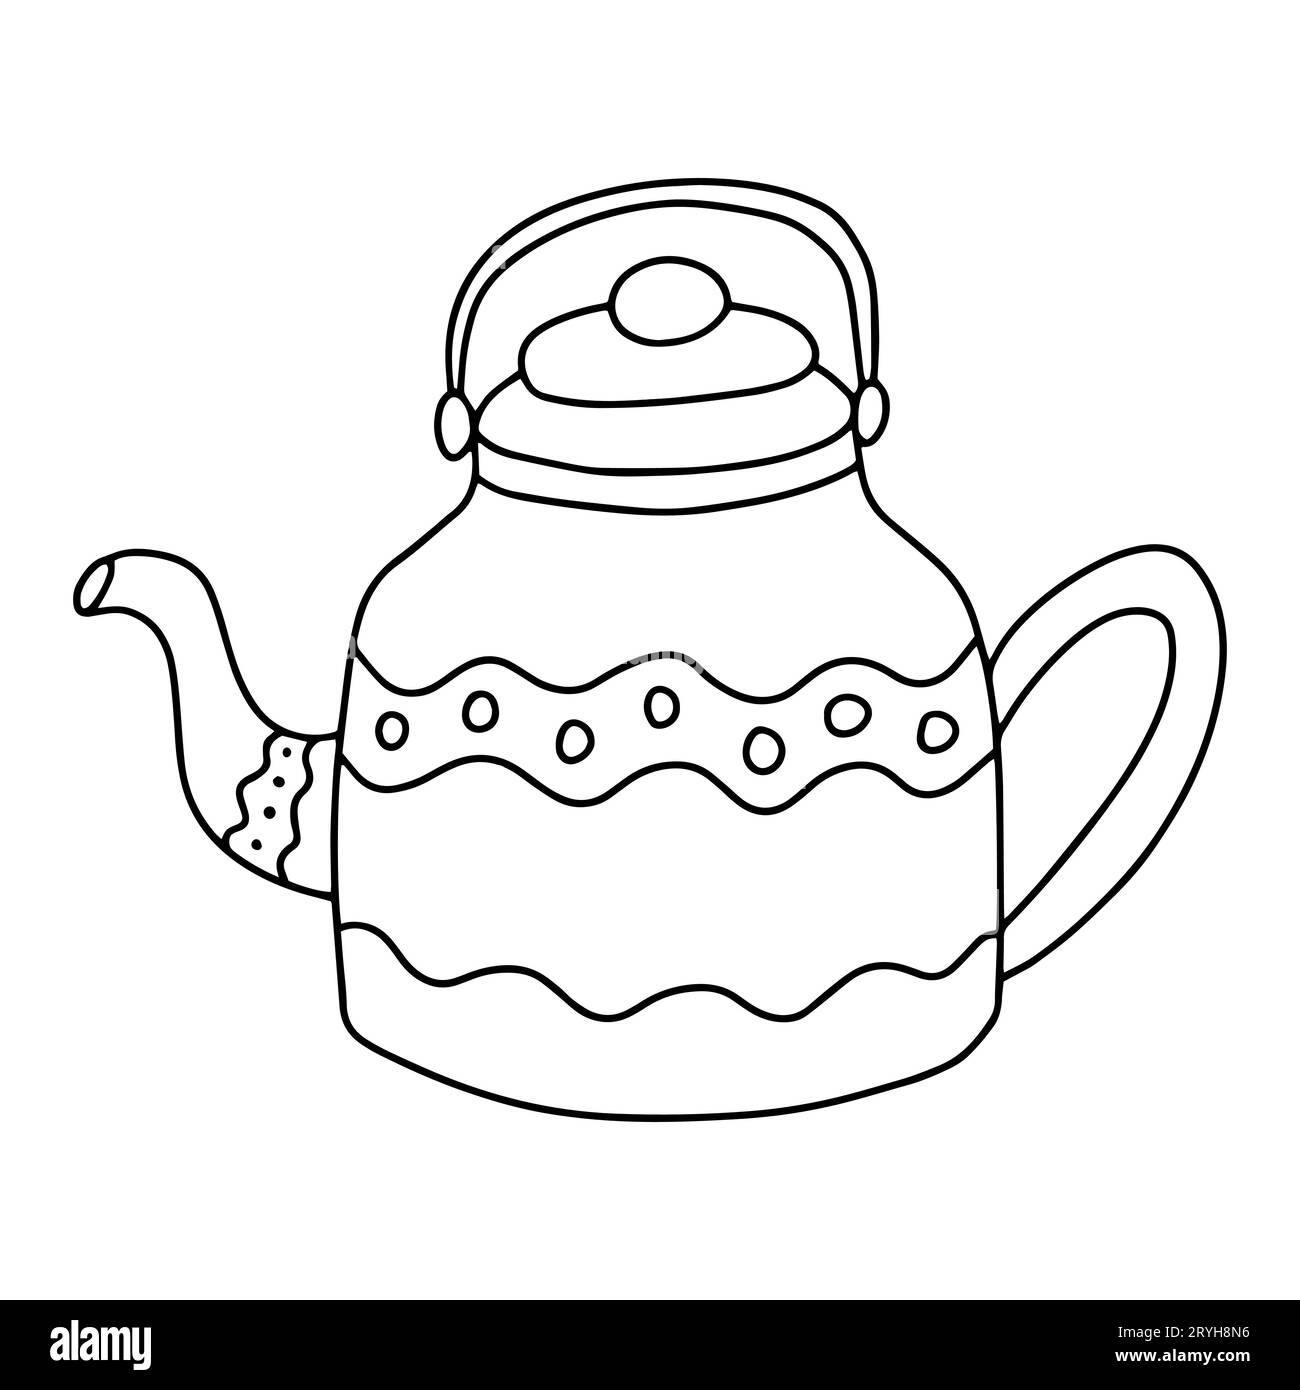 https://c8.alamy.com/comp/2RYH8N6/doodle-kettle-vector-sketch-2RYH8N6.jpg